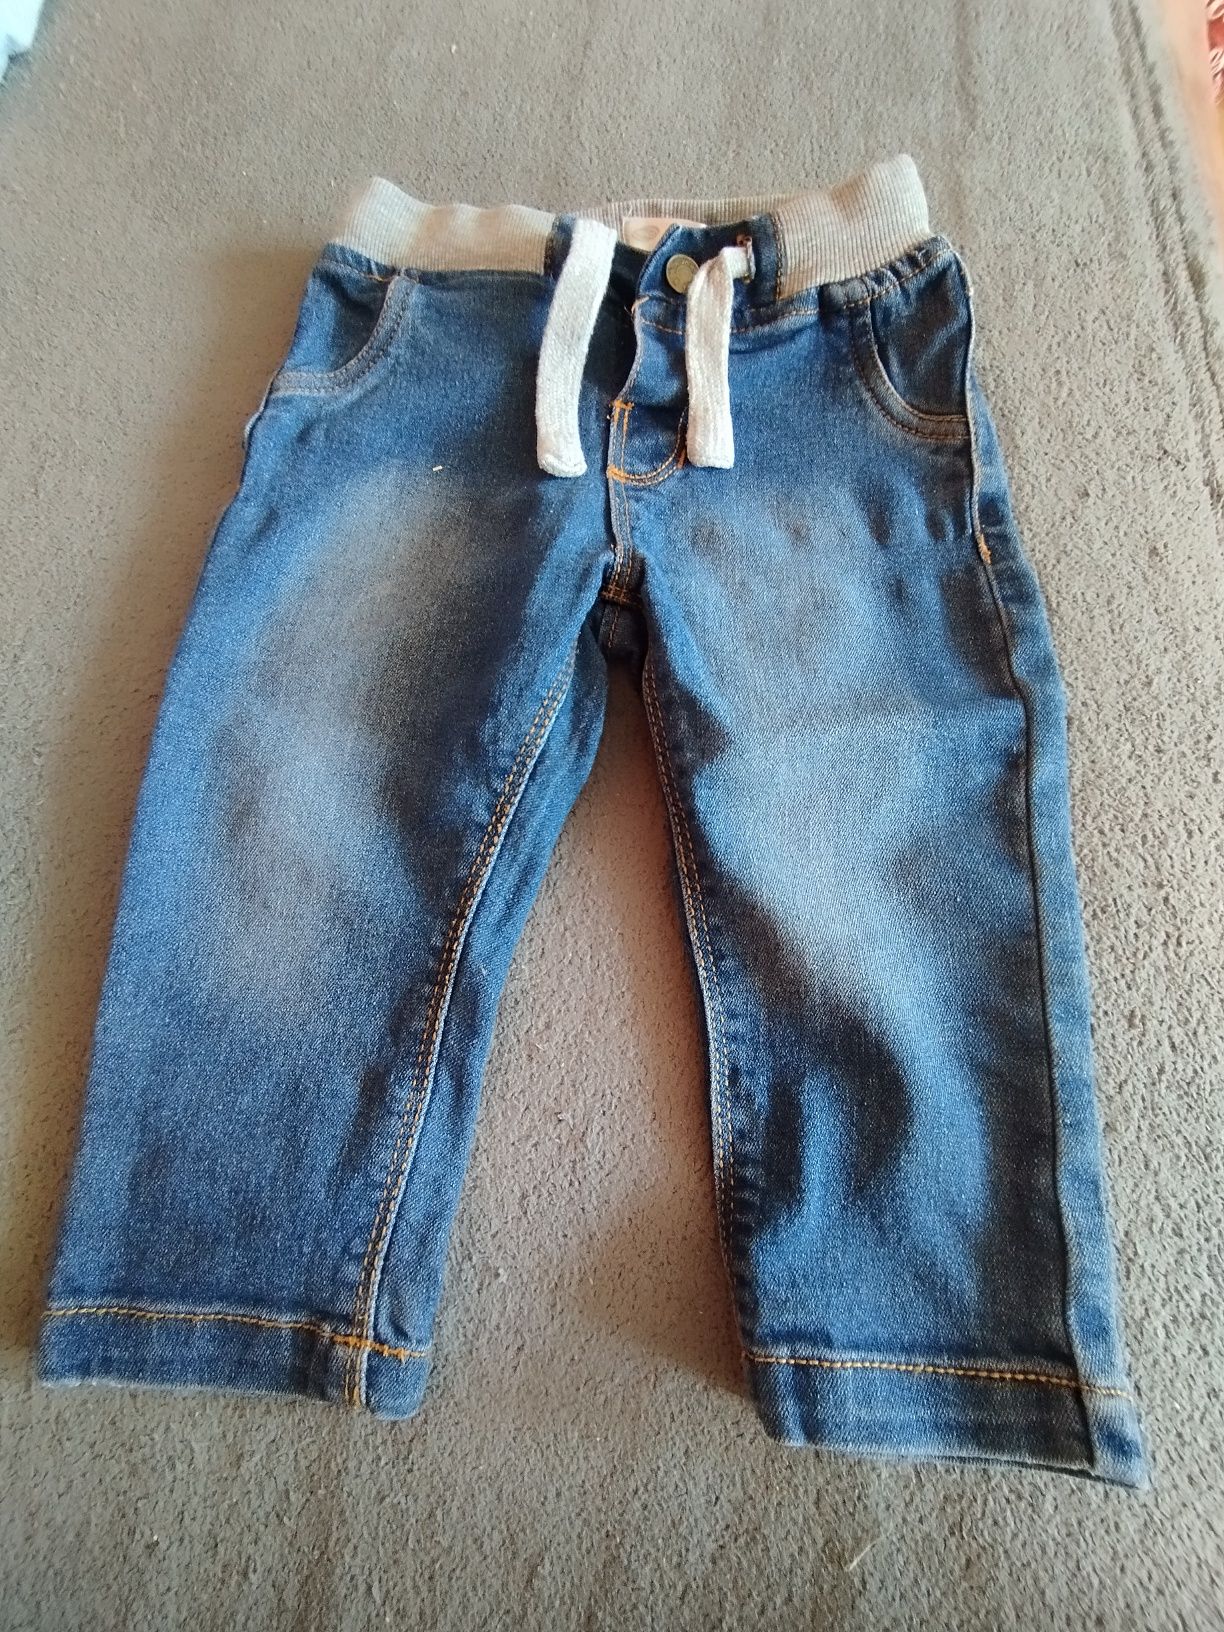 Spodnie z miękkiego jeansu 9-12 miesięcy